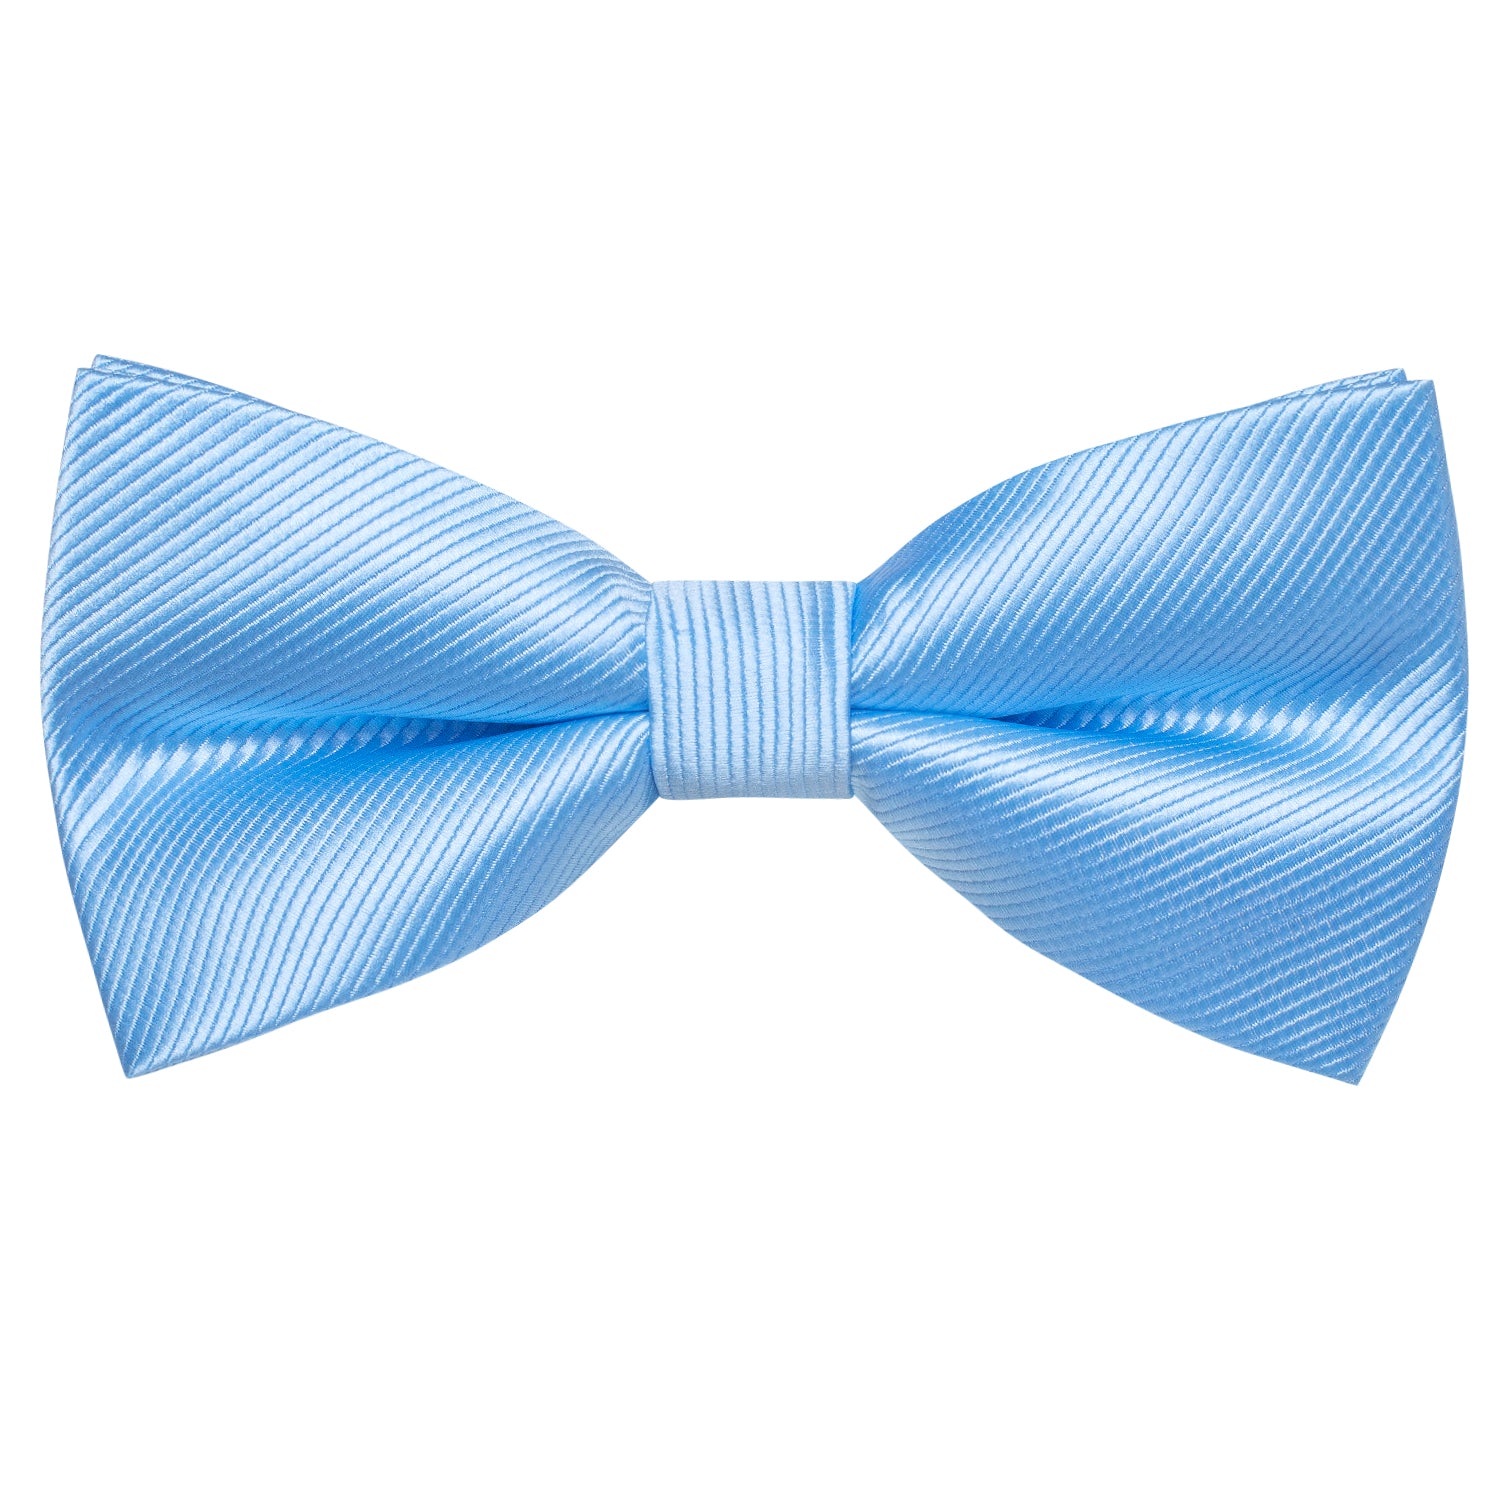 Light Blue Striped Pre-tied Bow Tie Hanky Cufflinks Set